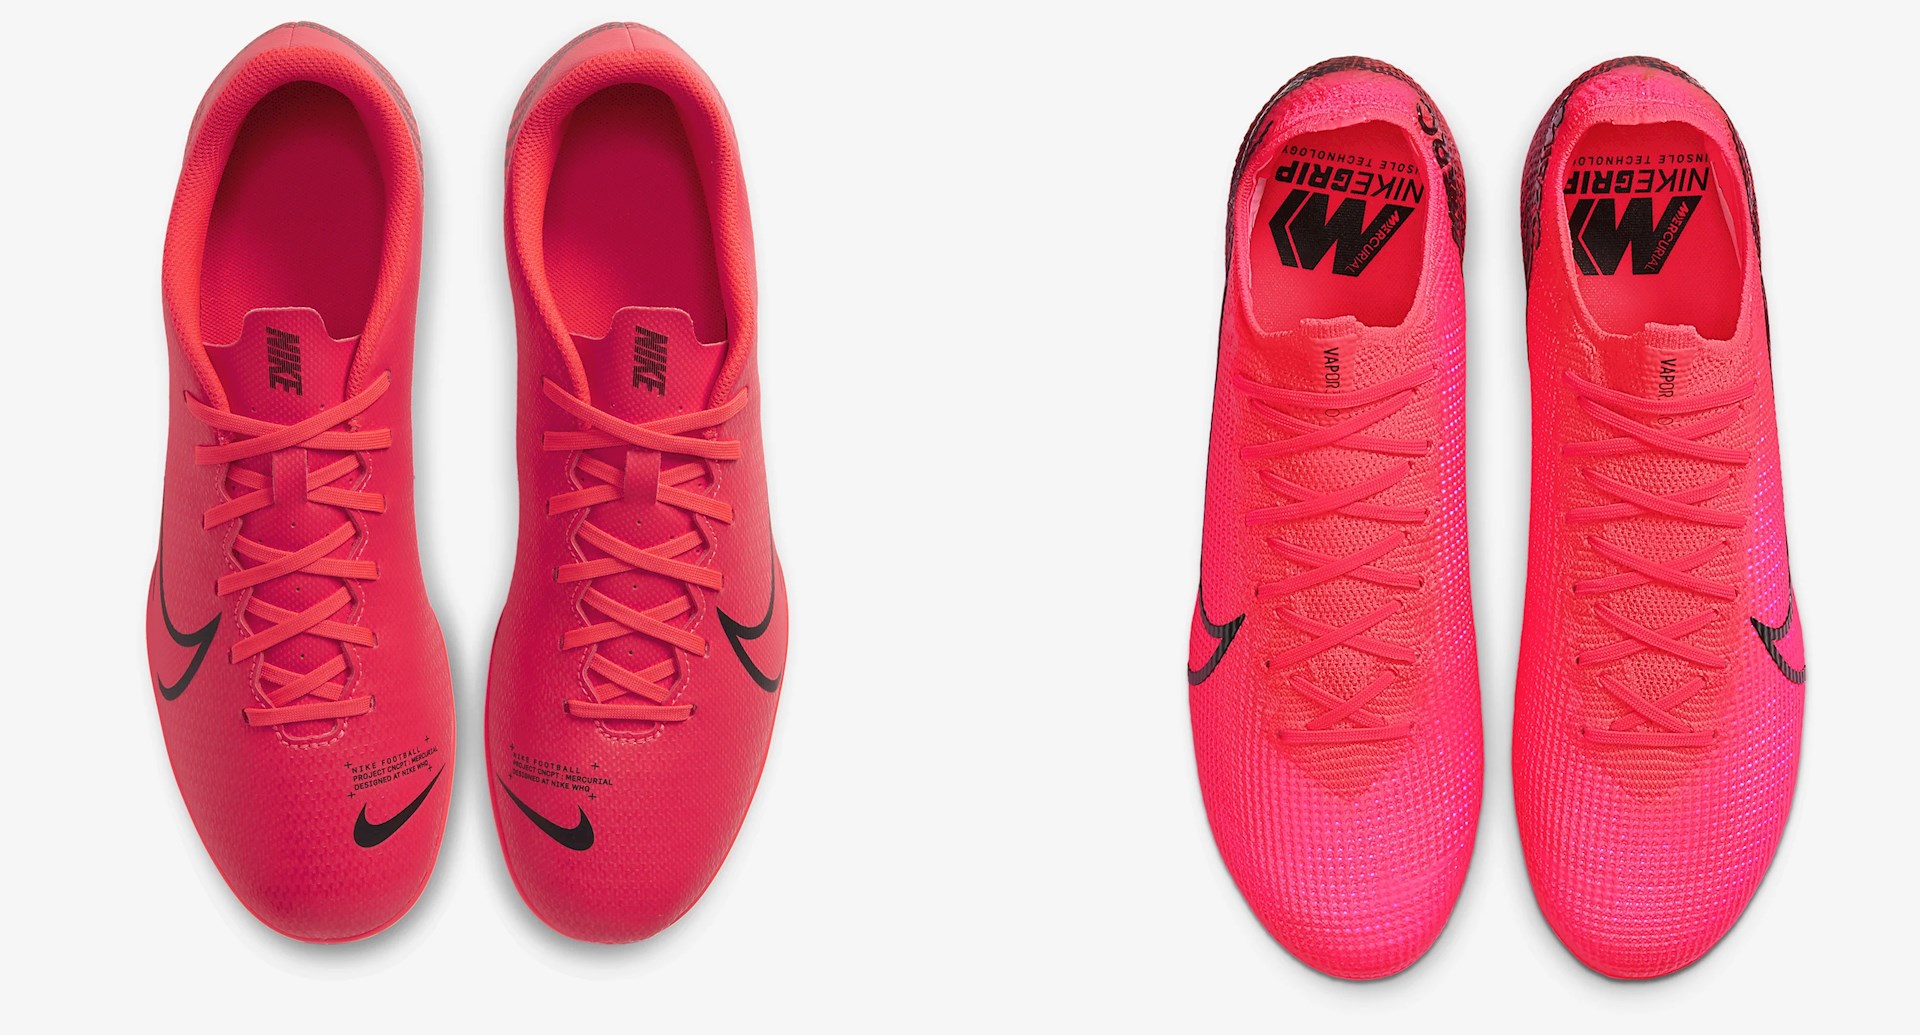 Verlenen entiteit Opmerkelijk Goedkope Nike Mercurial Vapor voetbalschoenen - Voetbal-schoenen.eu